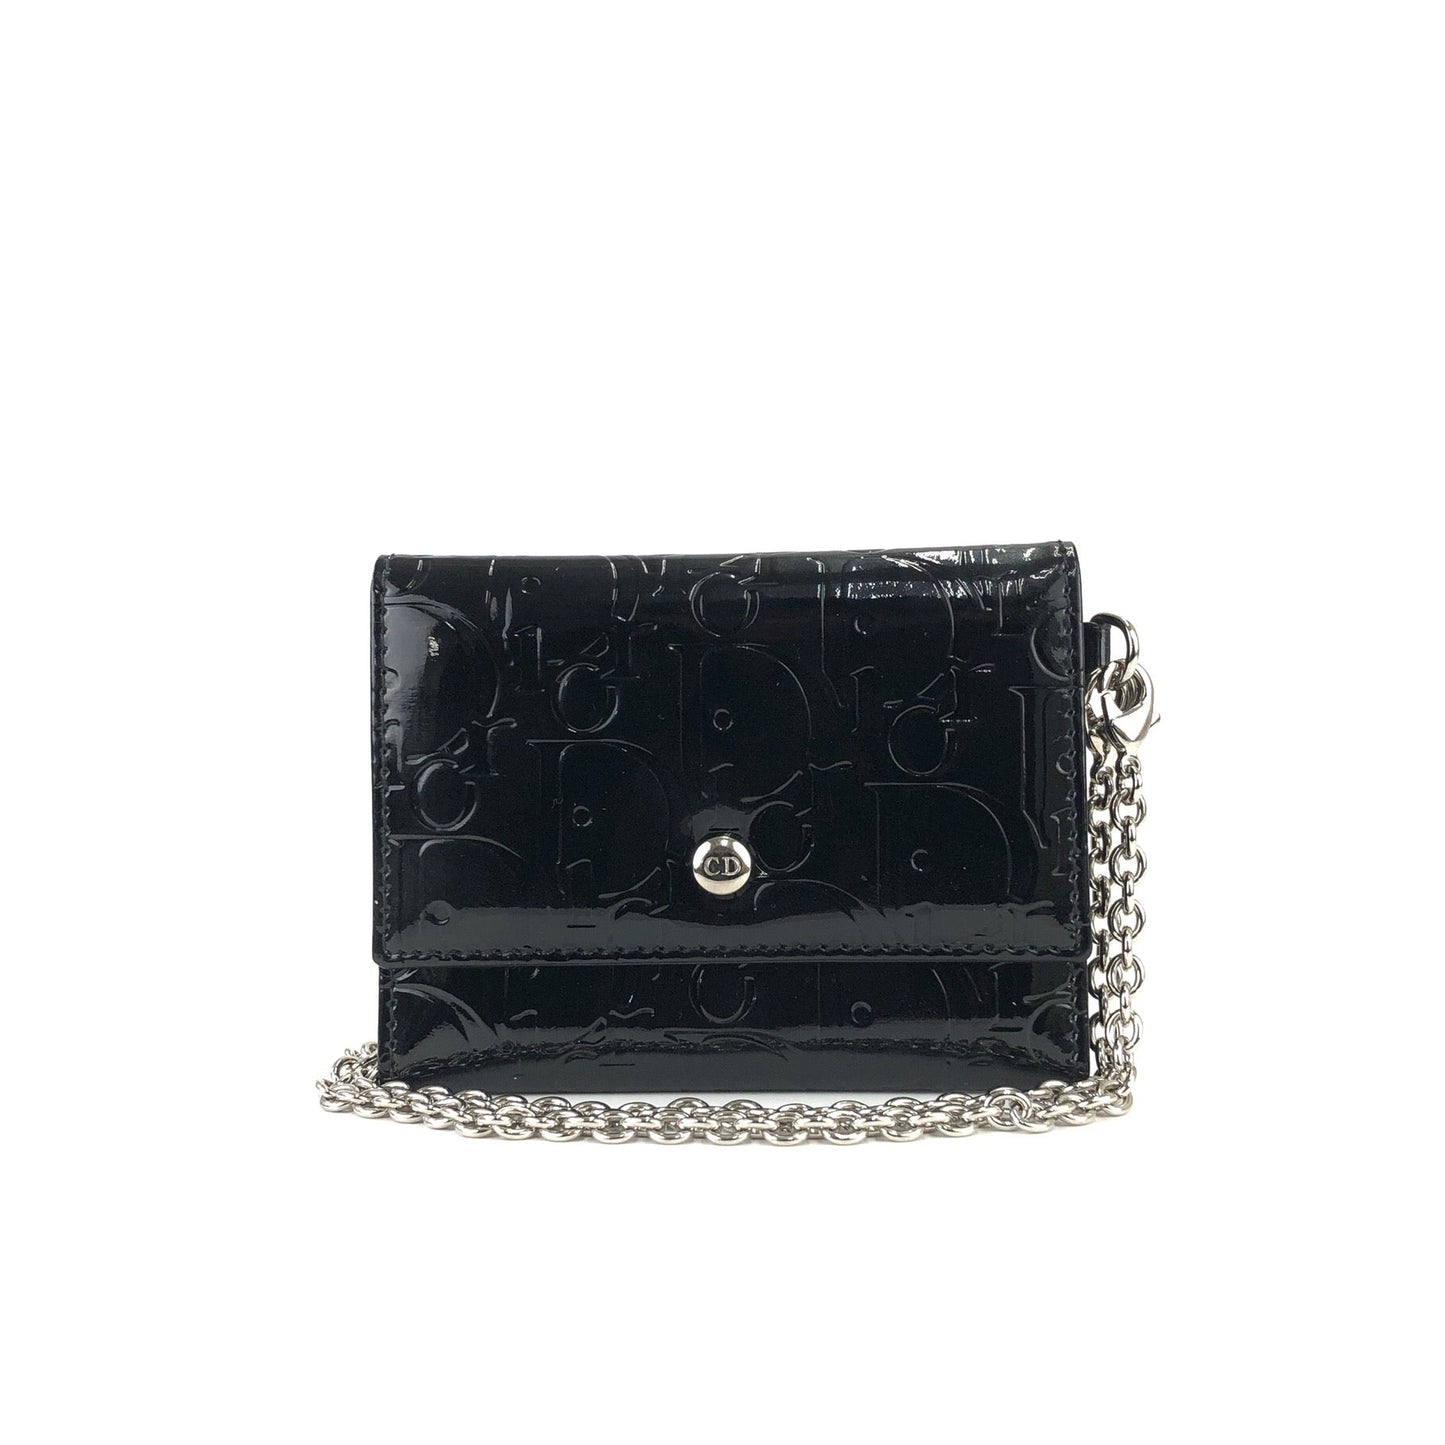 Christian Dior Logo Trotter Oblique Patent leather Chain bag Wallet Black Vintage Old 5ydufj